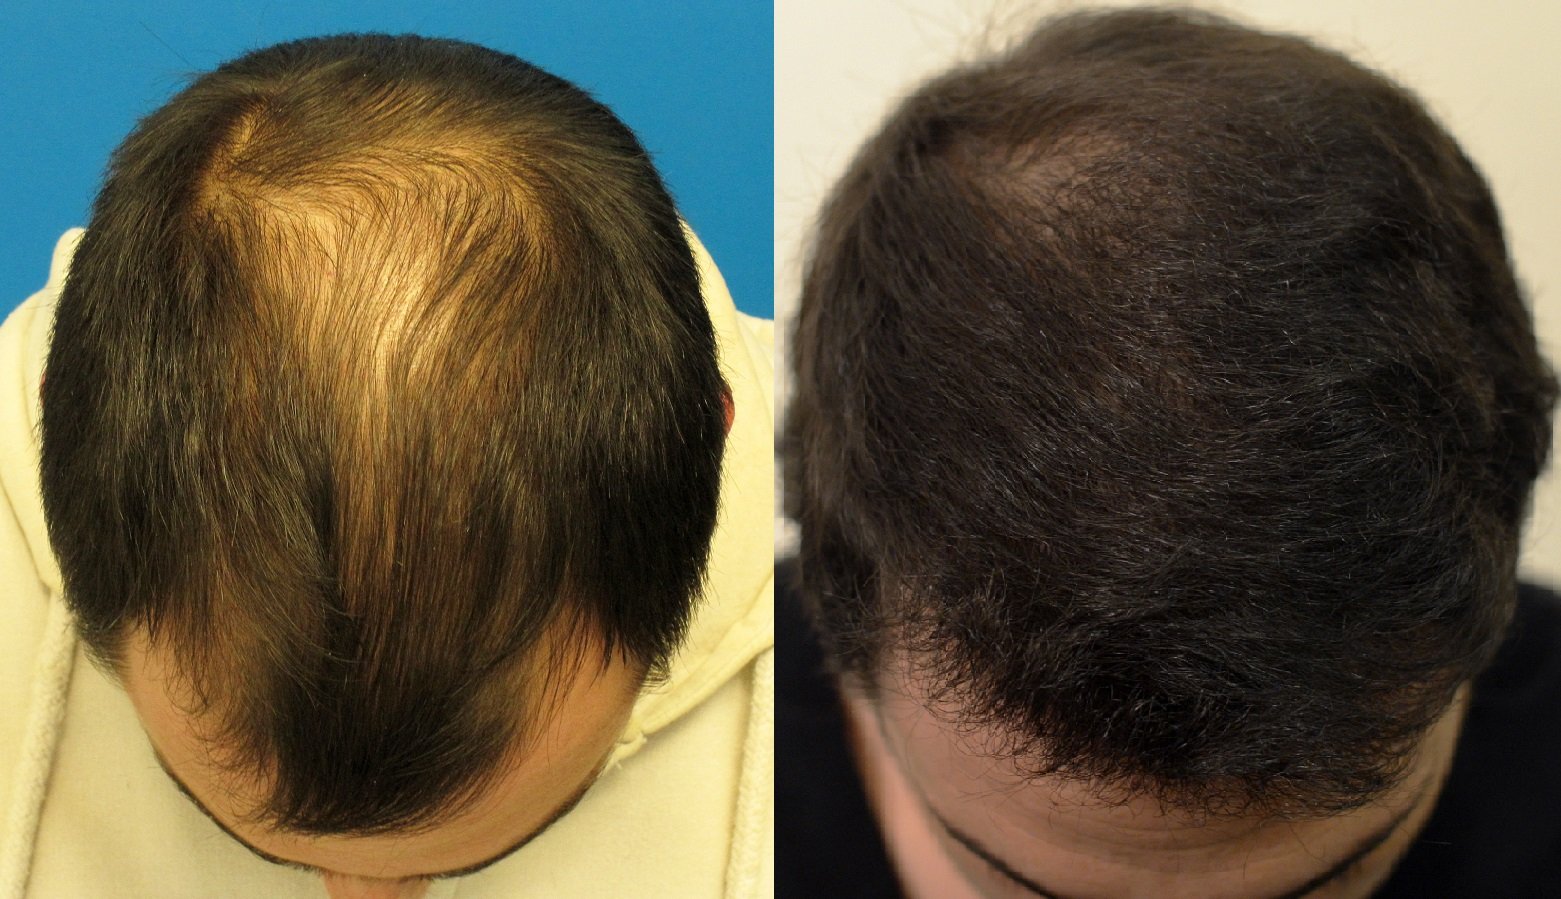 Hair loss treatment